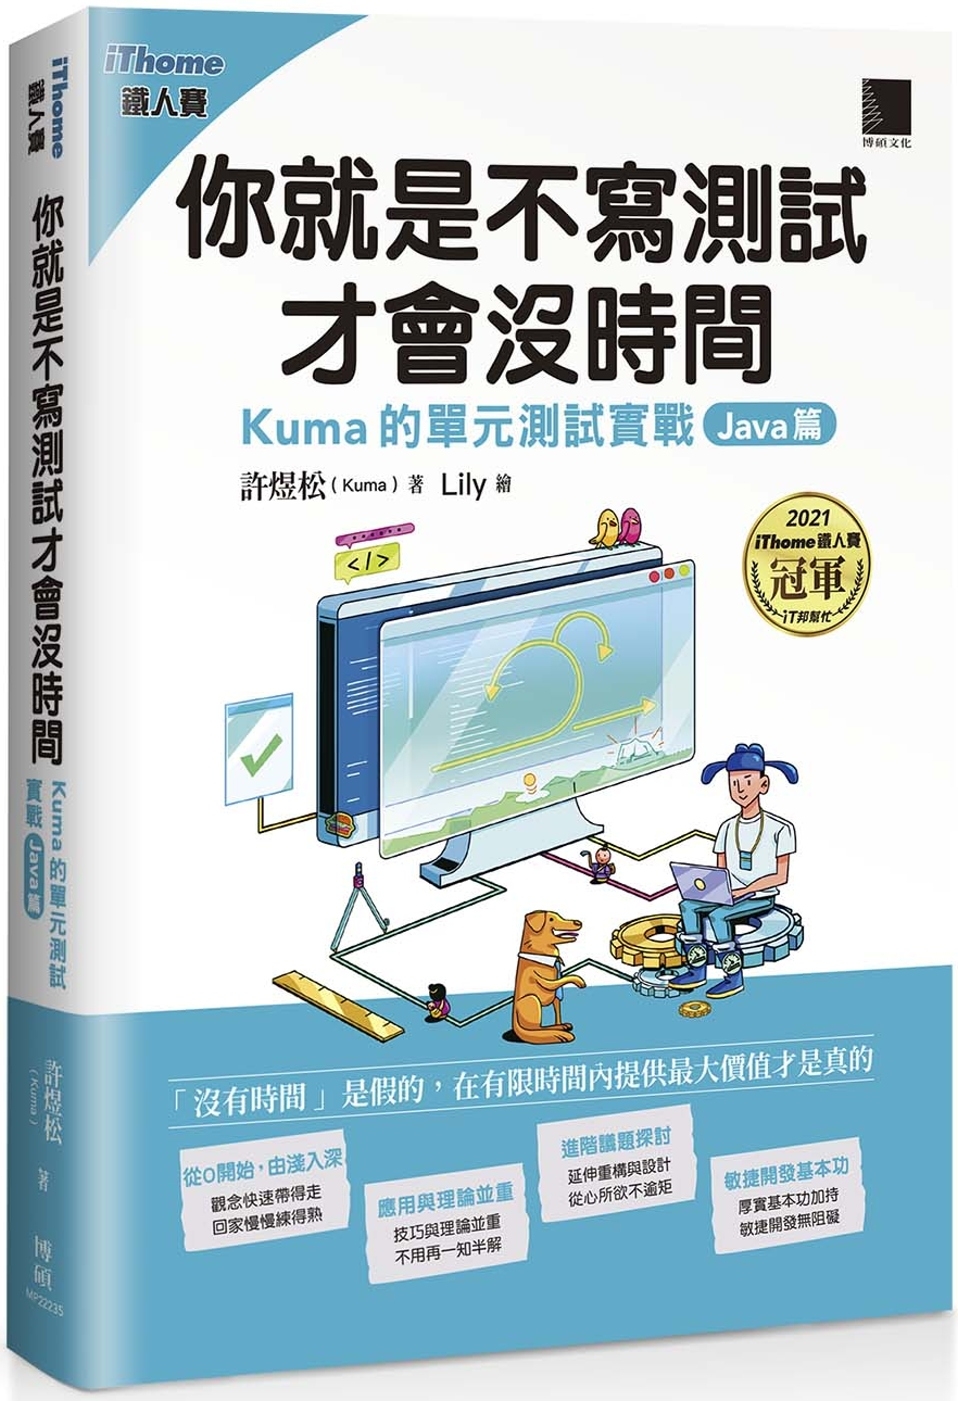 你就是不寫測試才會沒時間：Kuma的單元測試實戰-Java篇...